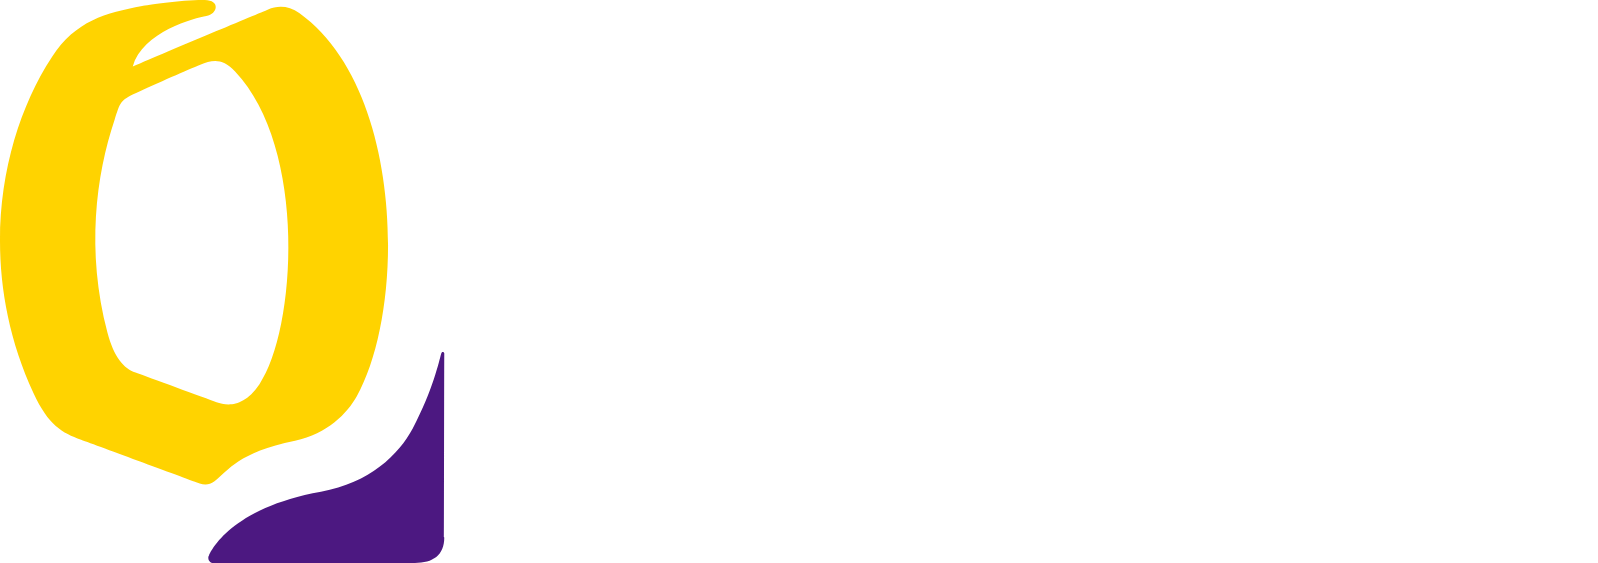 Ottakringer Getränke logo large for dark backgrounds (transparent PNG)